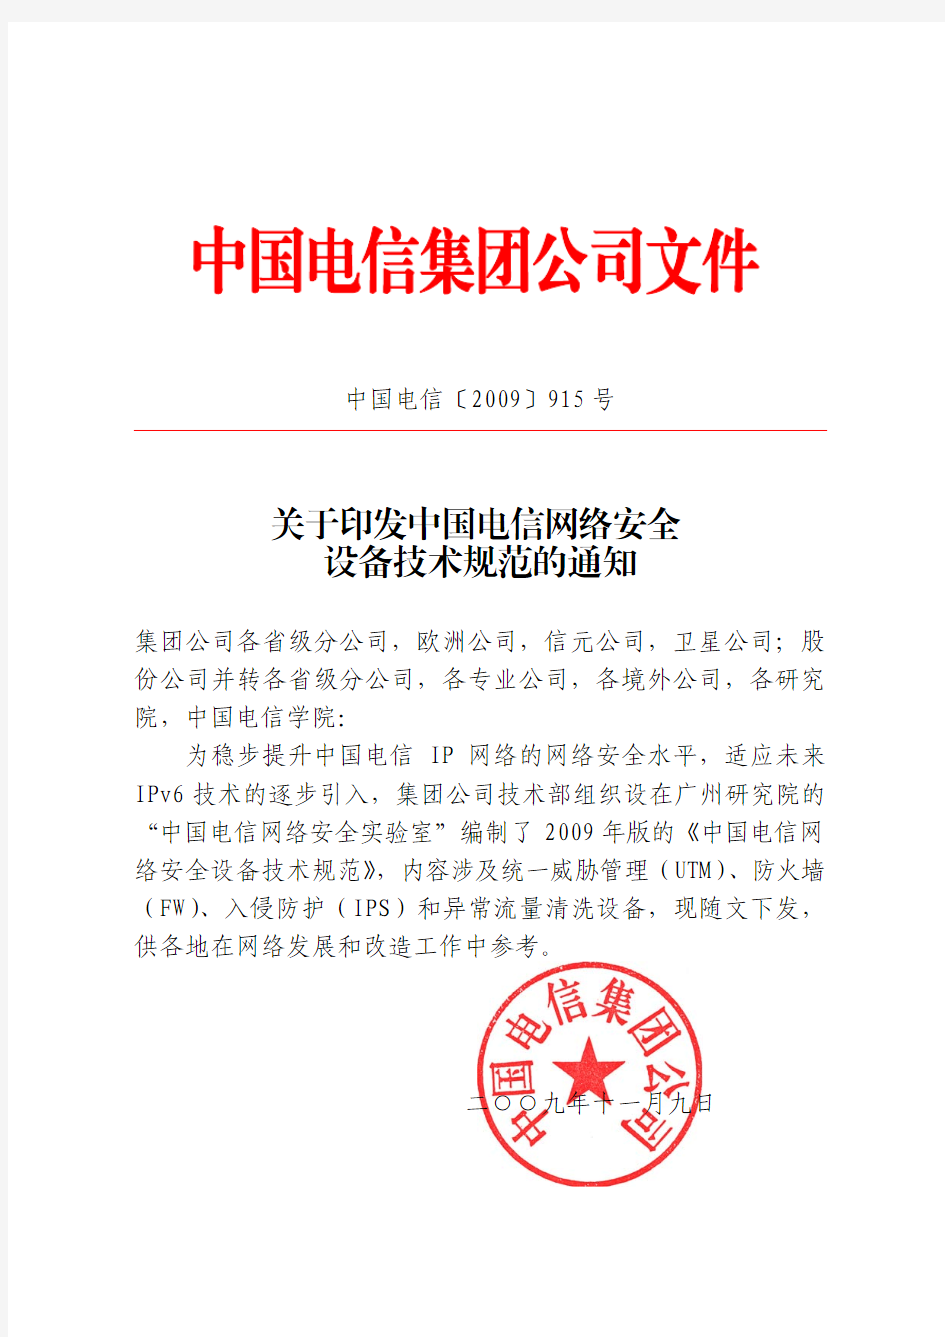 中国电信网络安全设备技术规范的通知